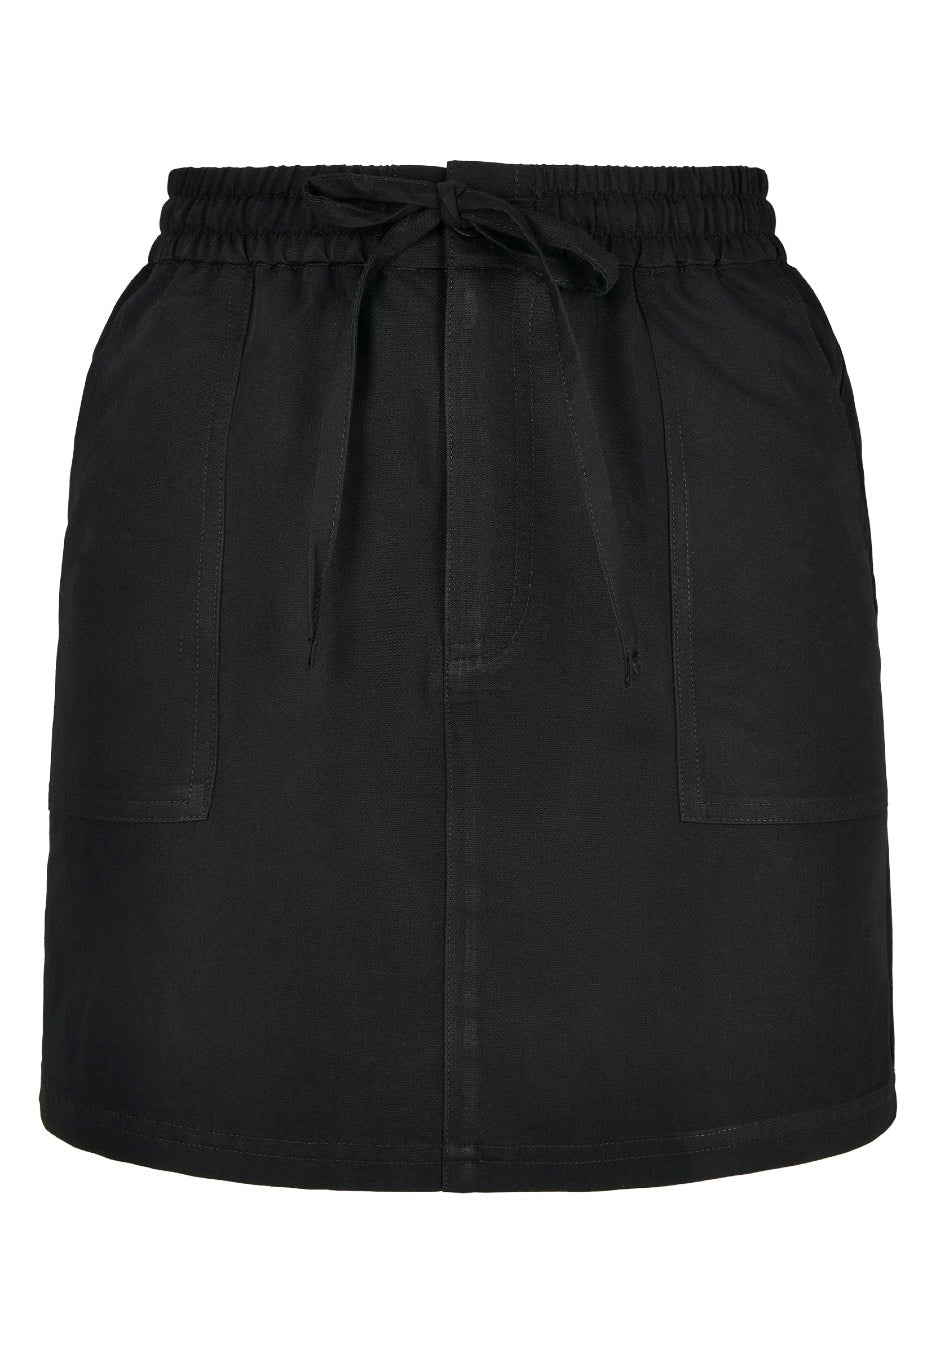 Urban Classics - Ladies Viscose Twill Black - Skirt